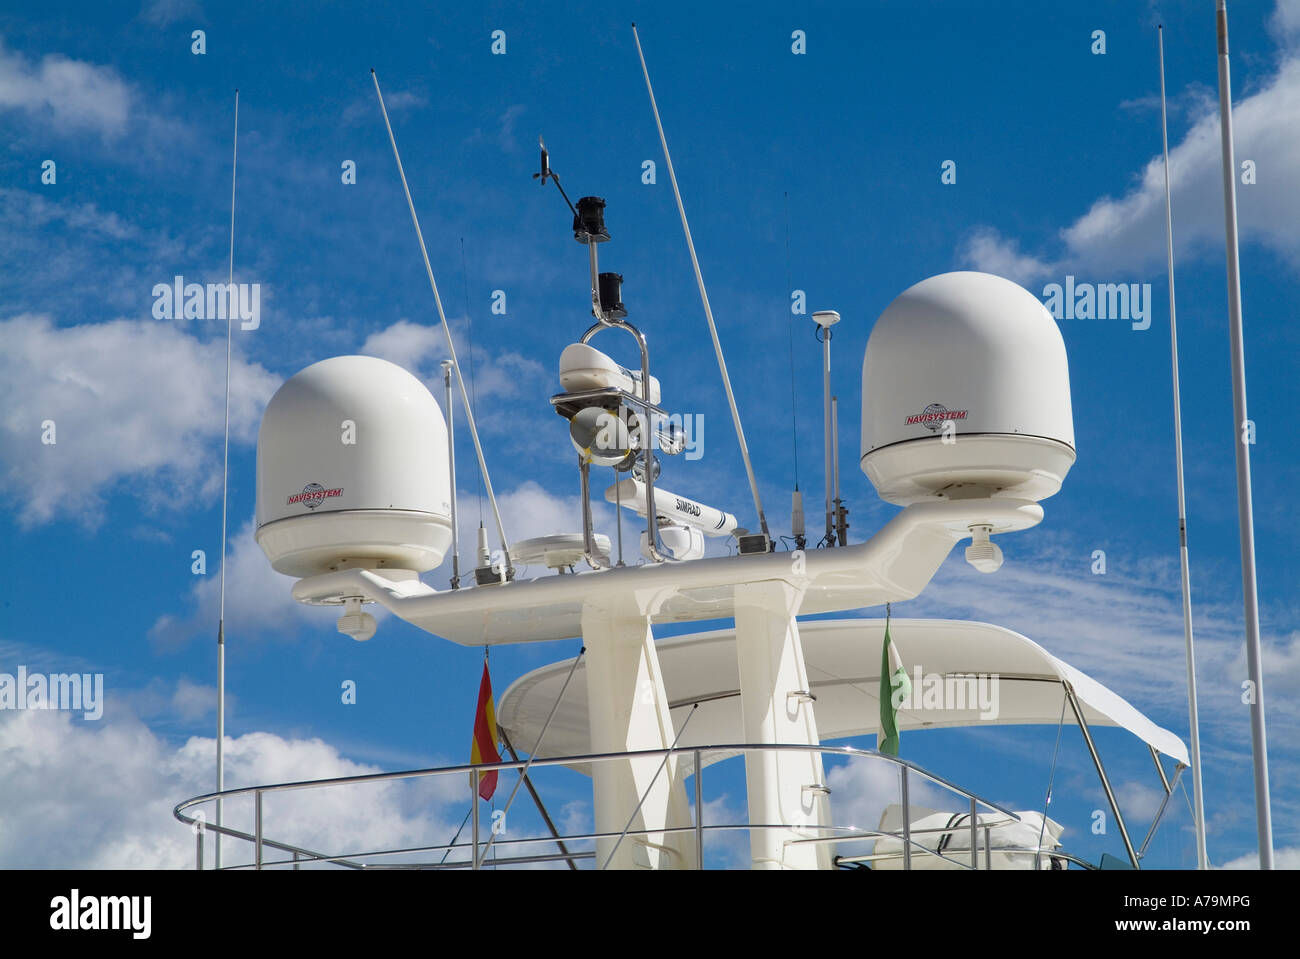 Dh DE COMMUNICATIONS RADAR Radar Antennes fouet pods sur bateau yacht pod naviguer voile electronic Banque D'Images